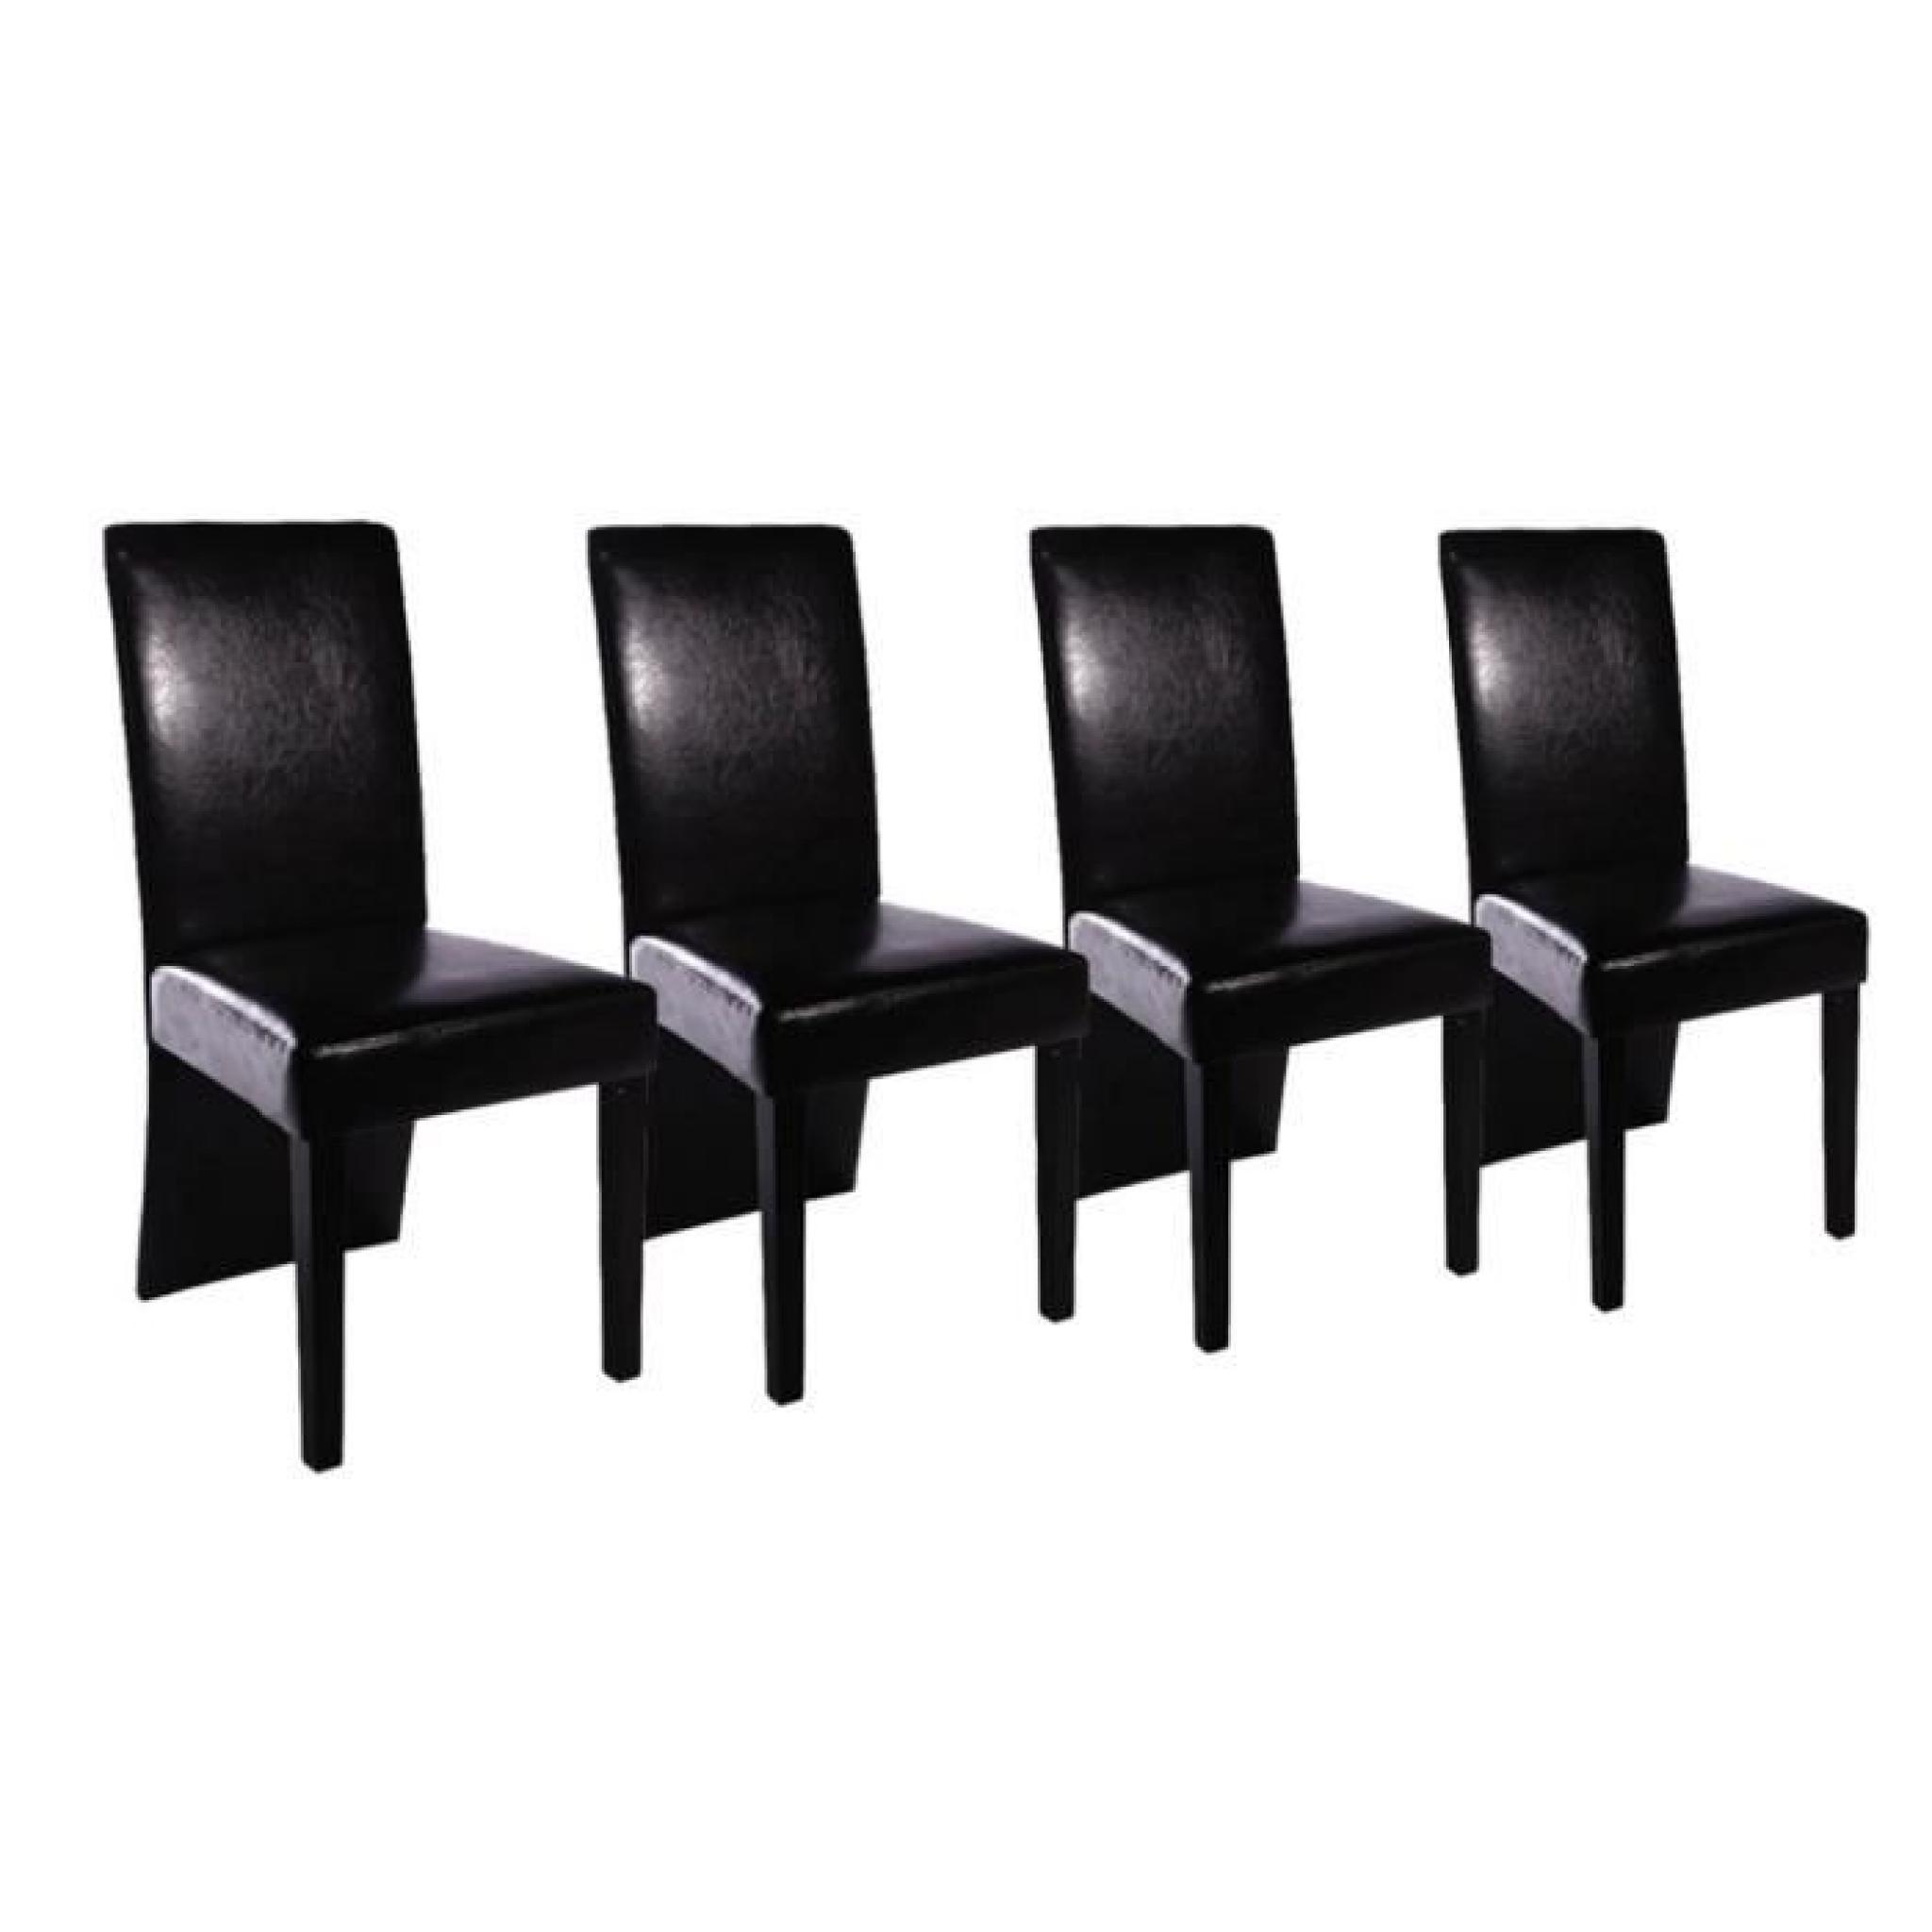 Magnifique Chaise design bois noir (lot de 4)PU